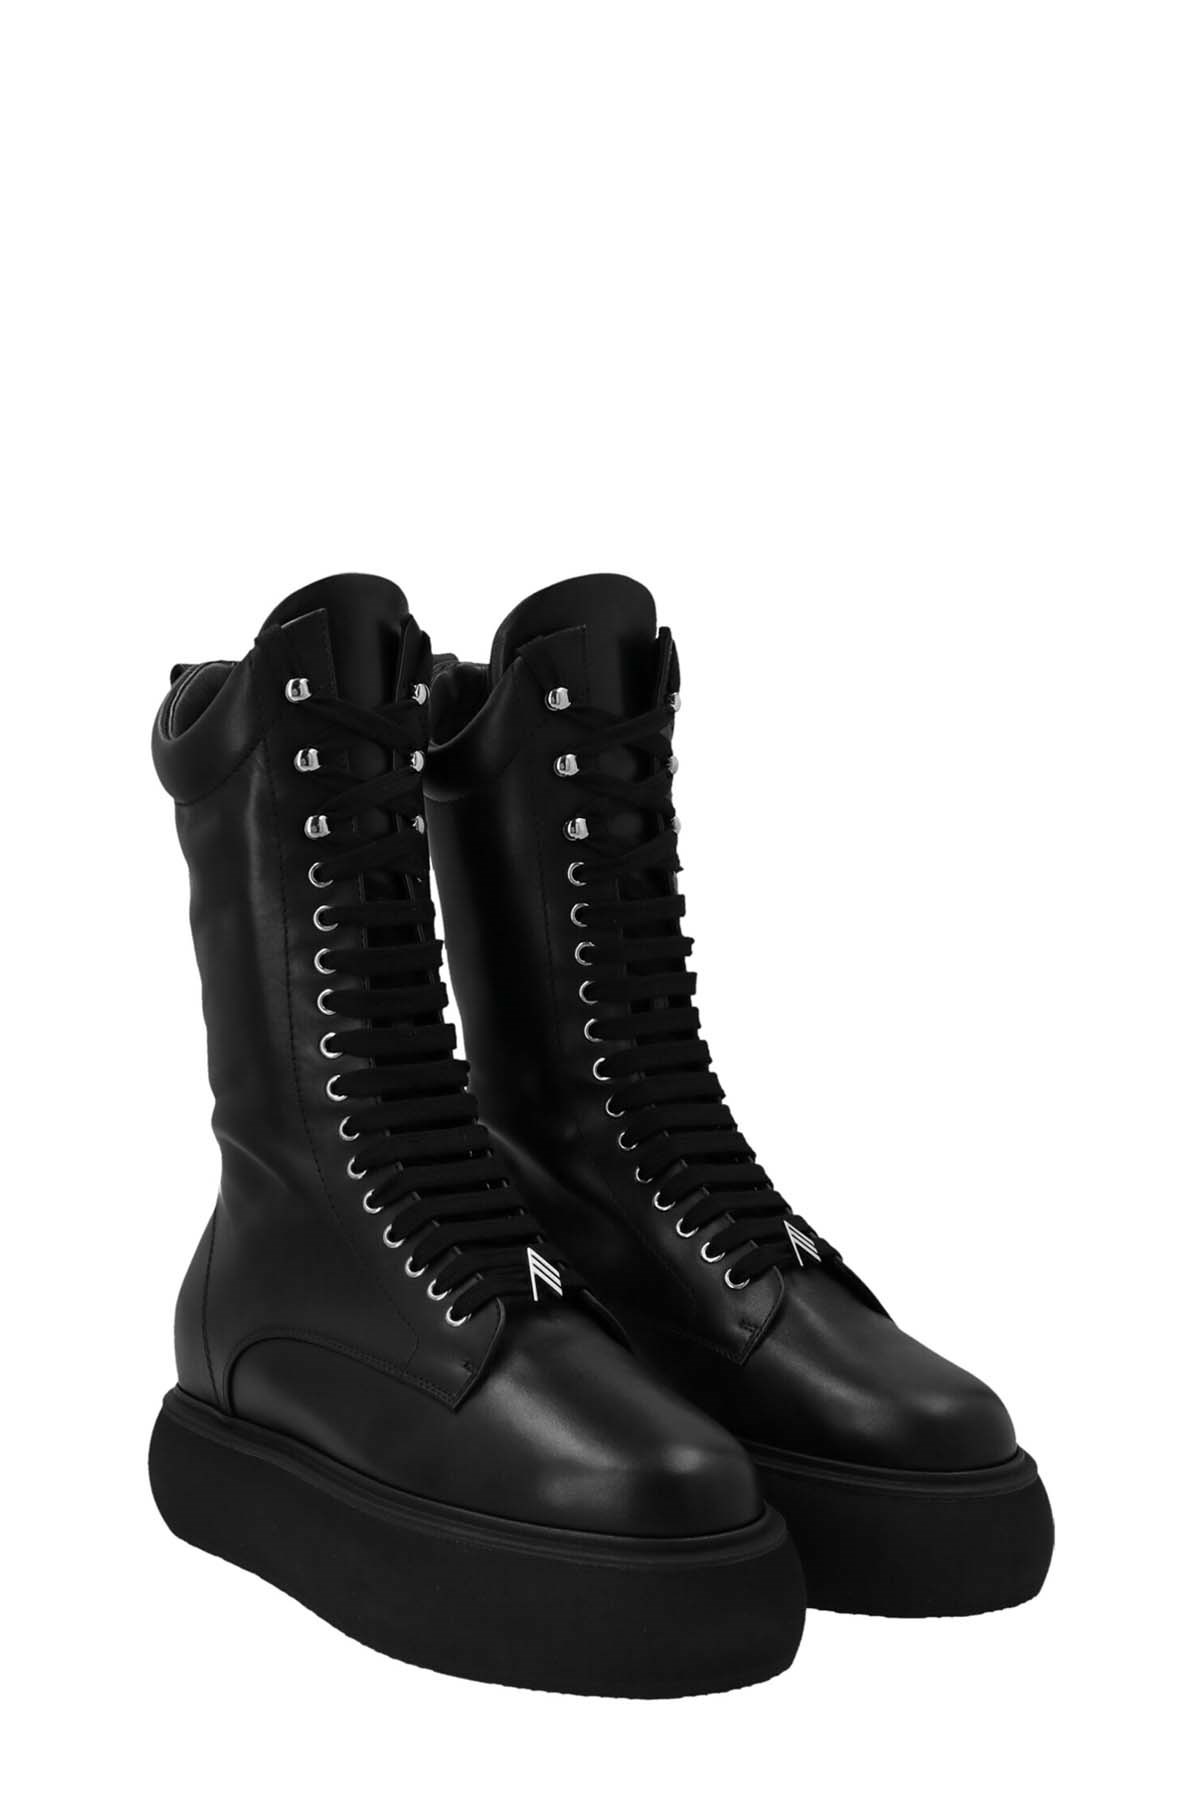 THE ATTICO 'Selene’ Combat Boots